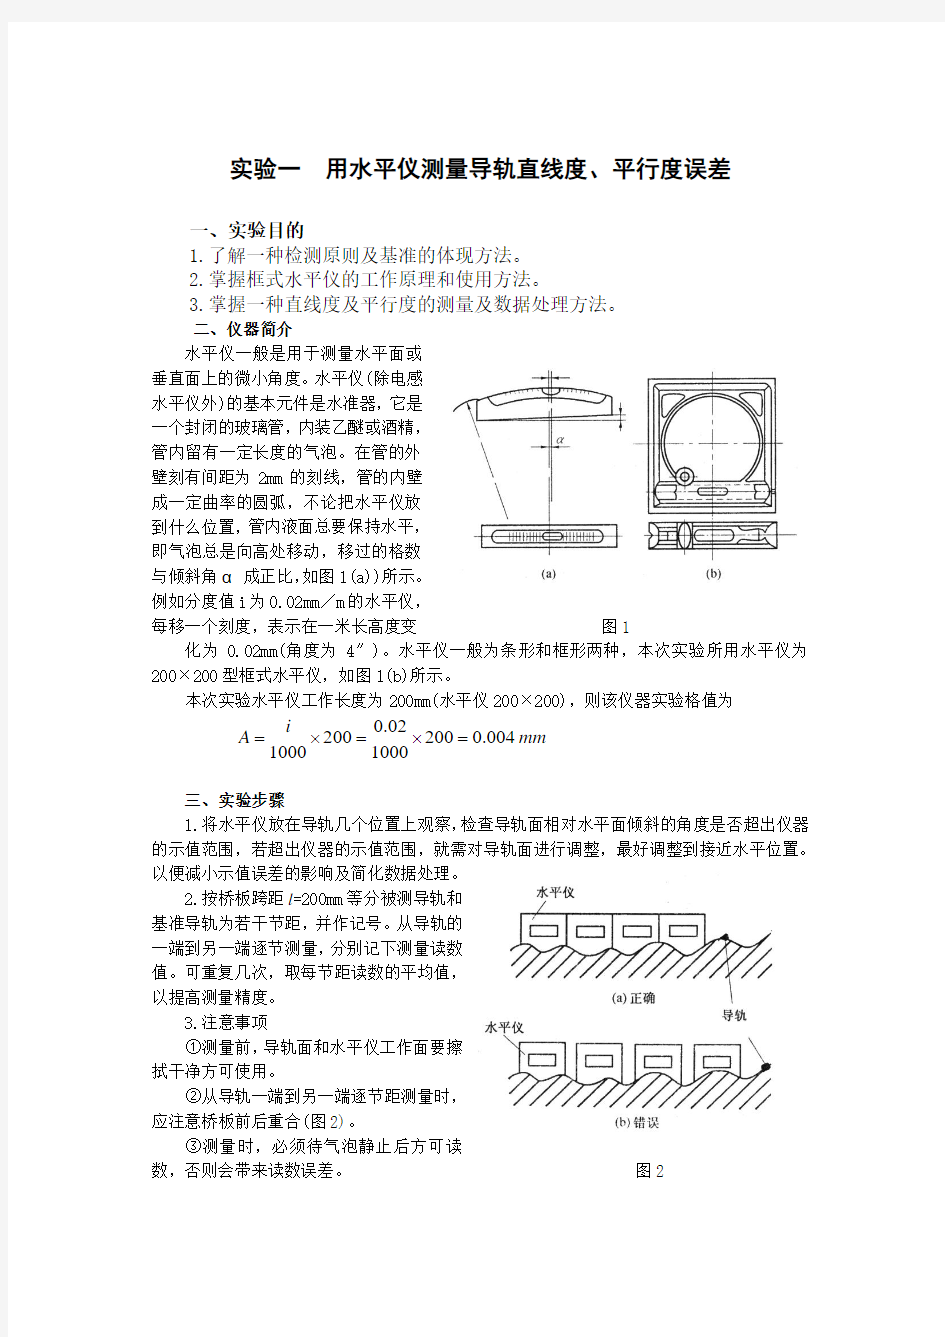 机械精度设计实验指导书2008